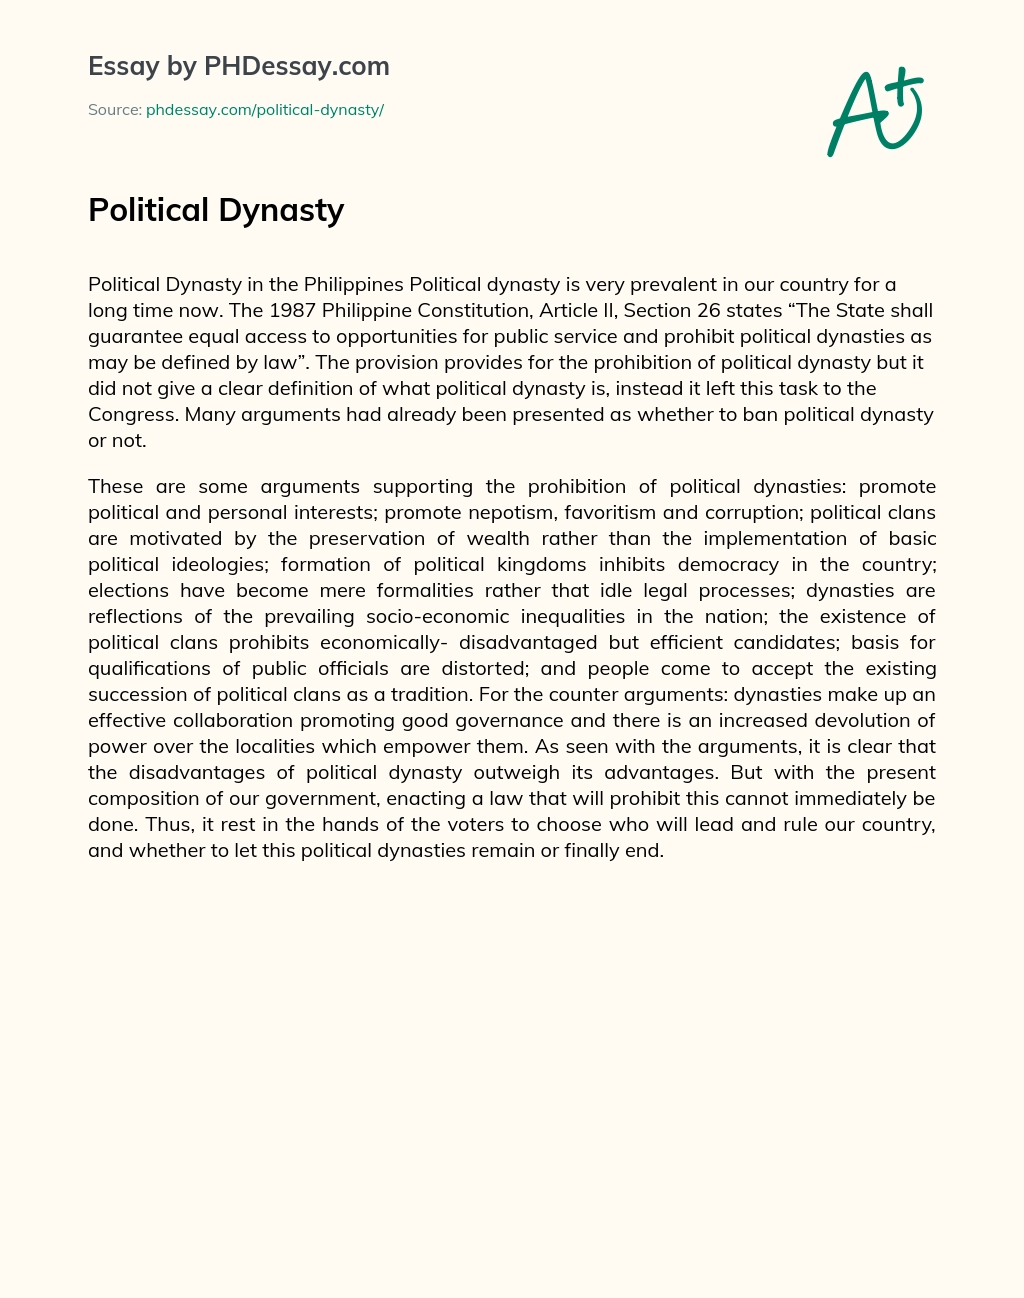 Political Dynasty essay